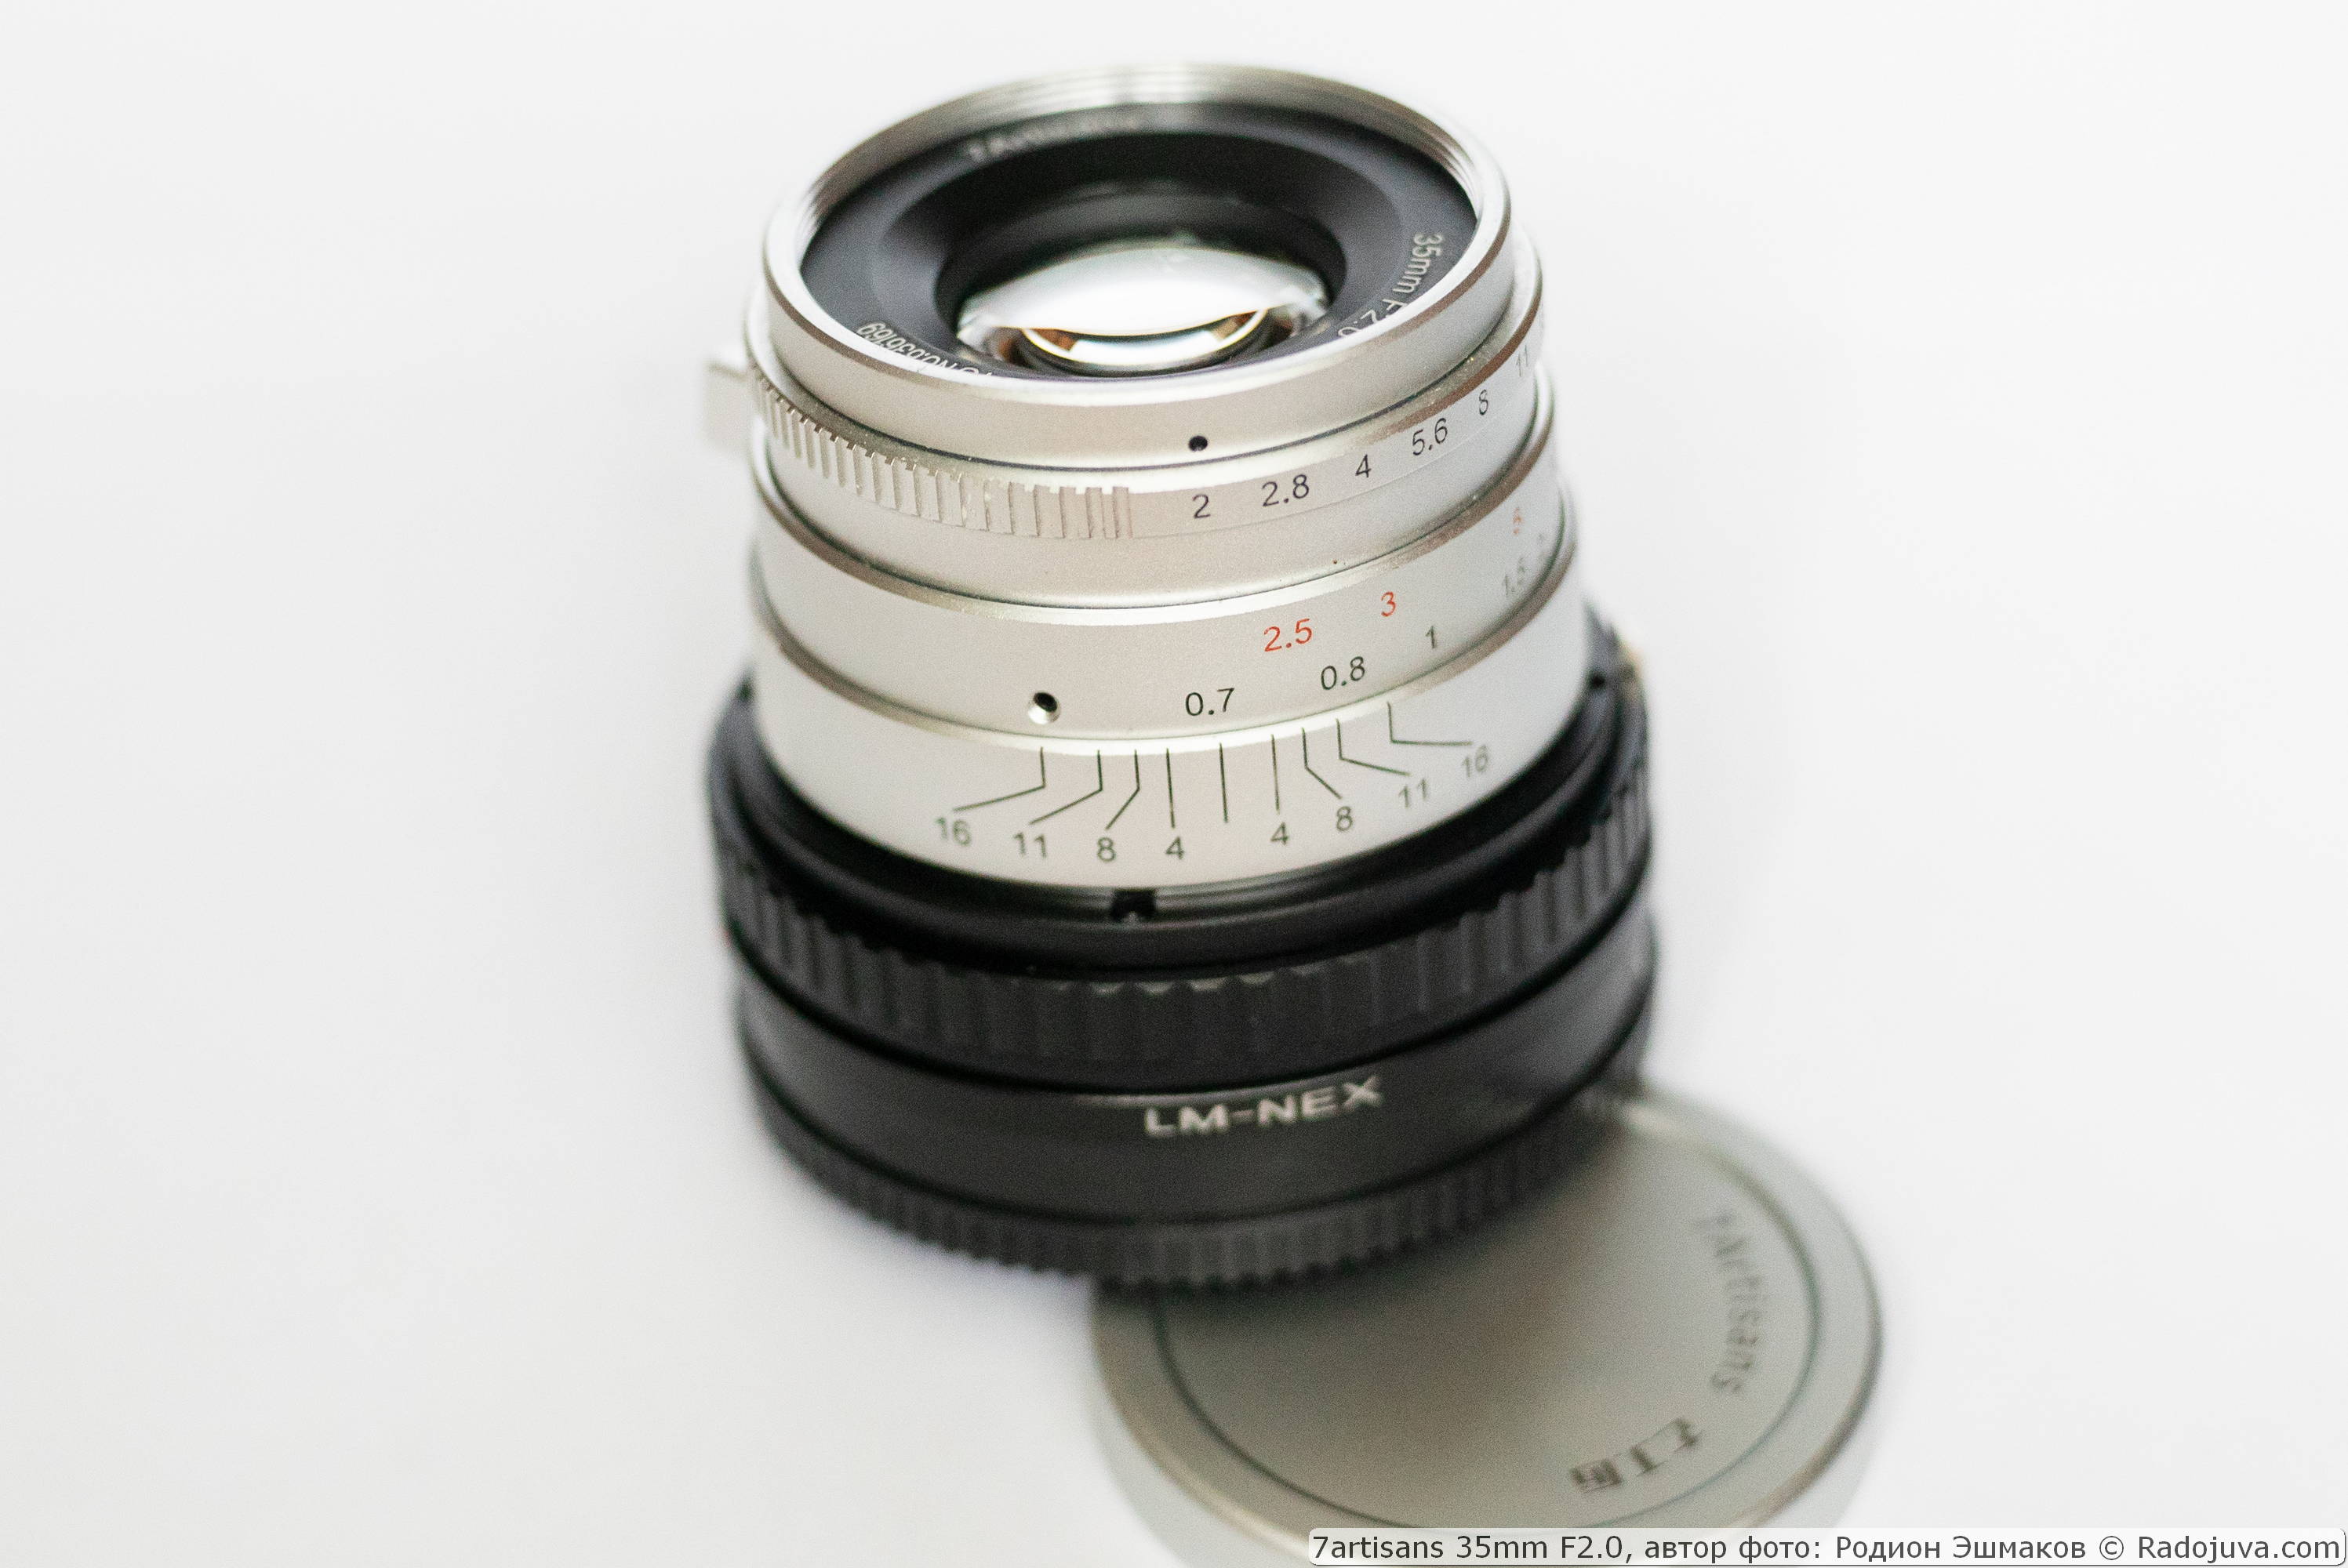 Объектив 7artisans 35/2 с адаптером-геликоидом Leica M – NEX при фокусировке на МДФ объектива и адаптера.